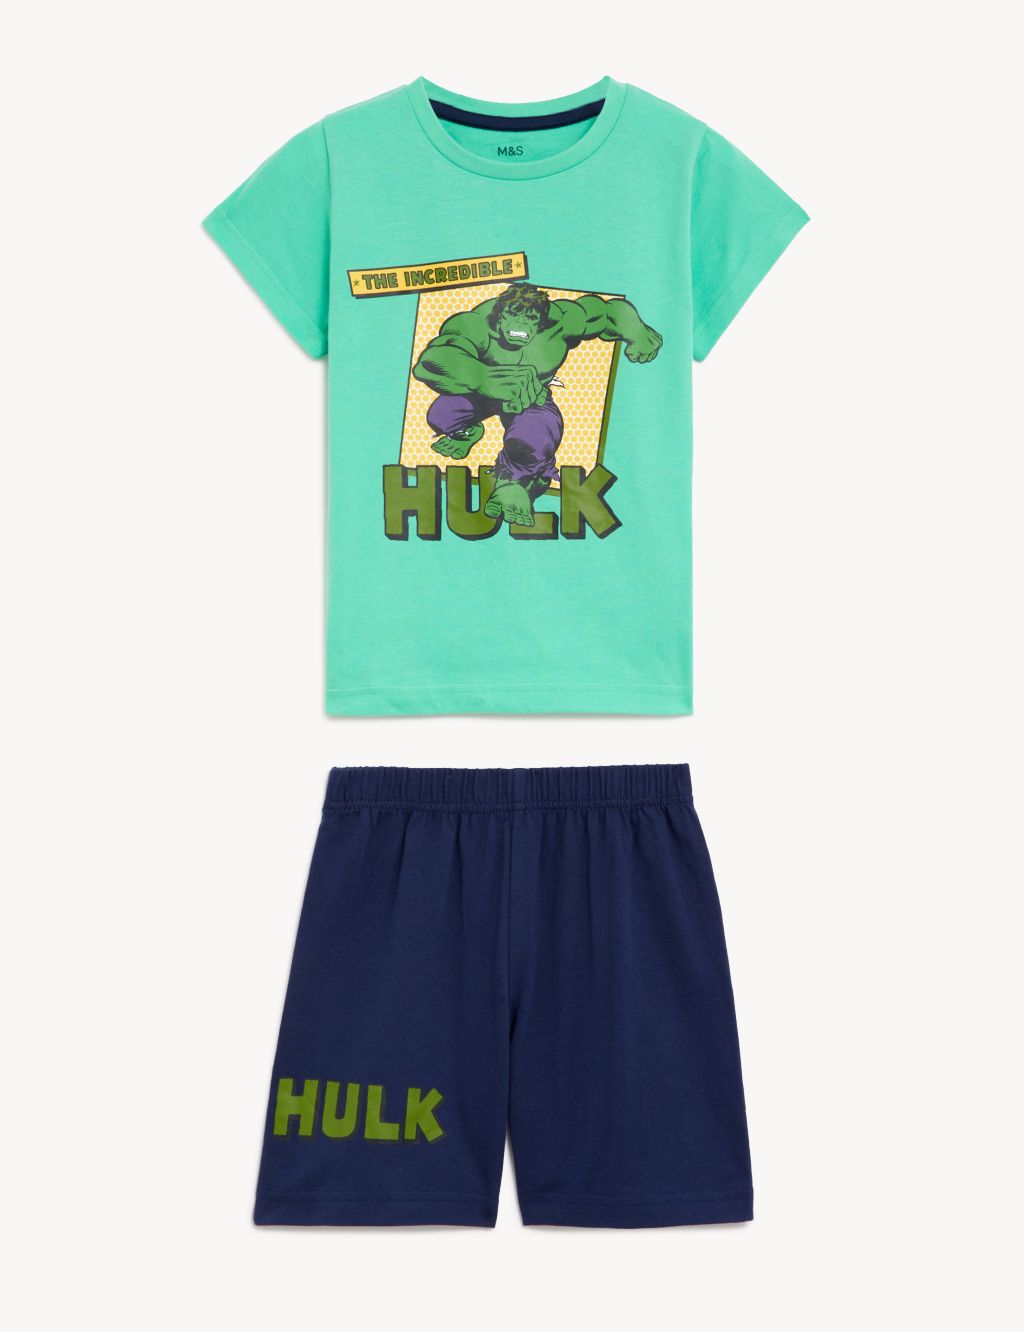 The Hulk™ Short Pyjama Set (3-12 Yrs) image 2